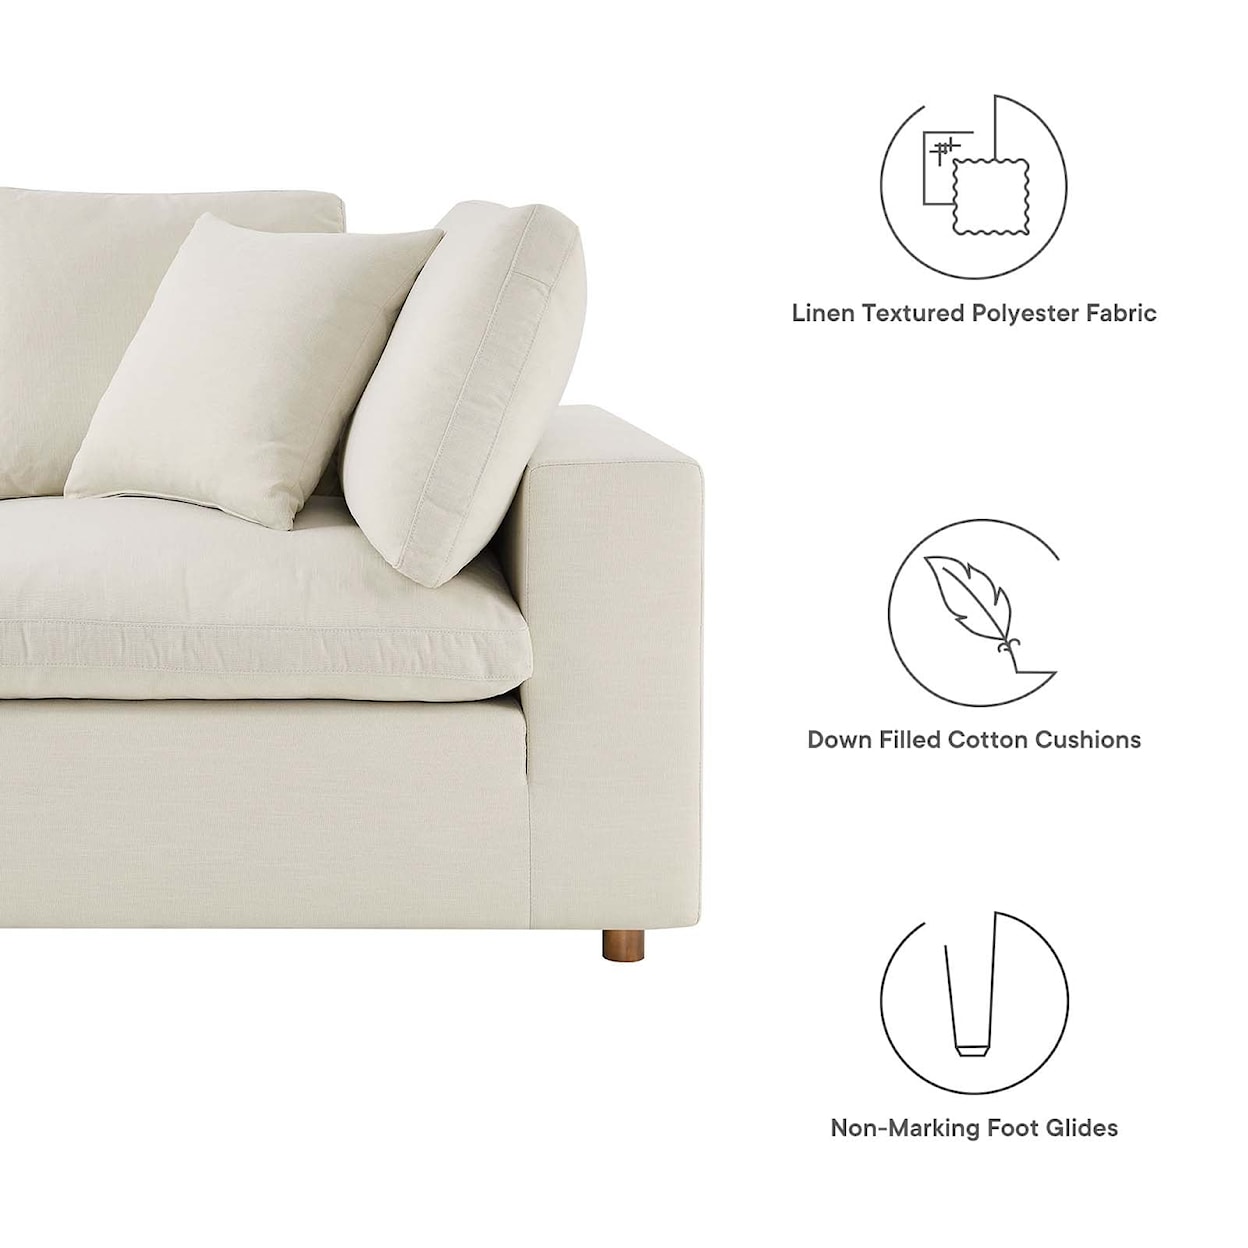 Modway Commix 5 Piece Sectional Sofa Set